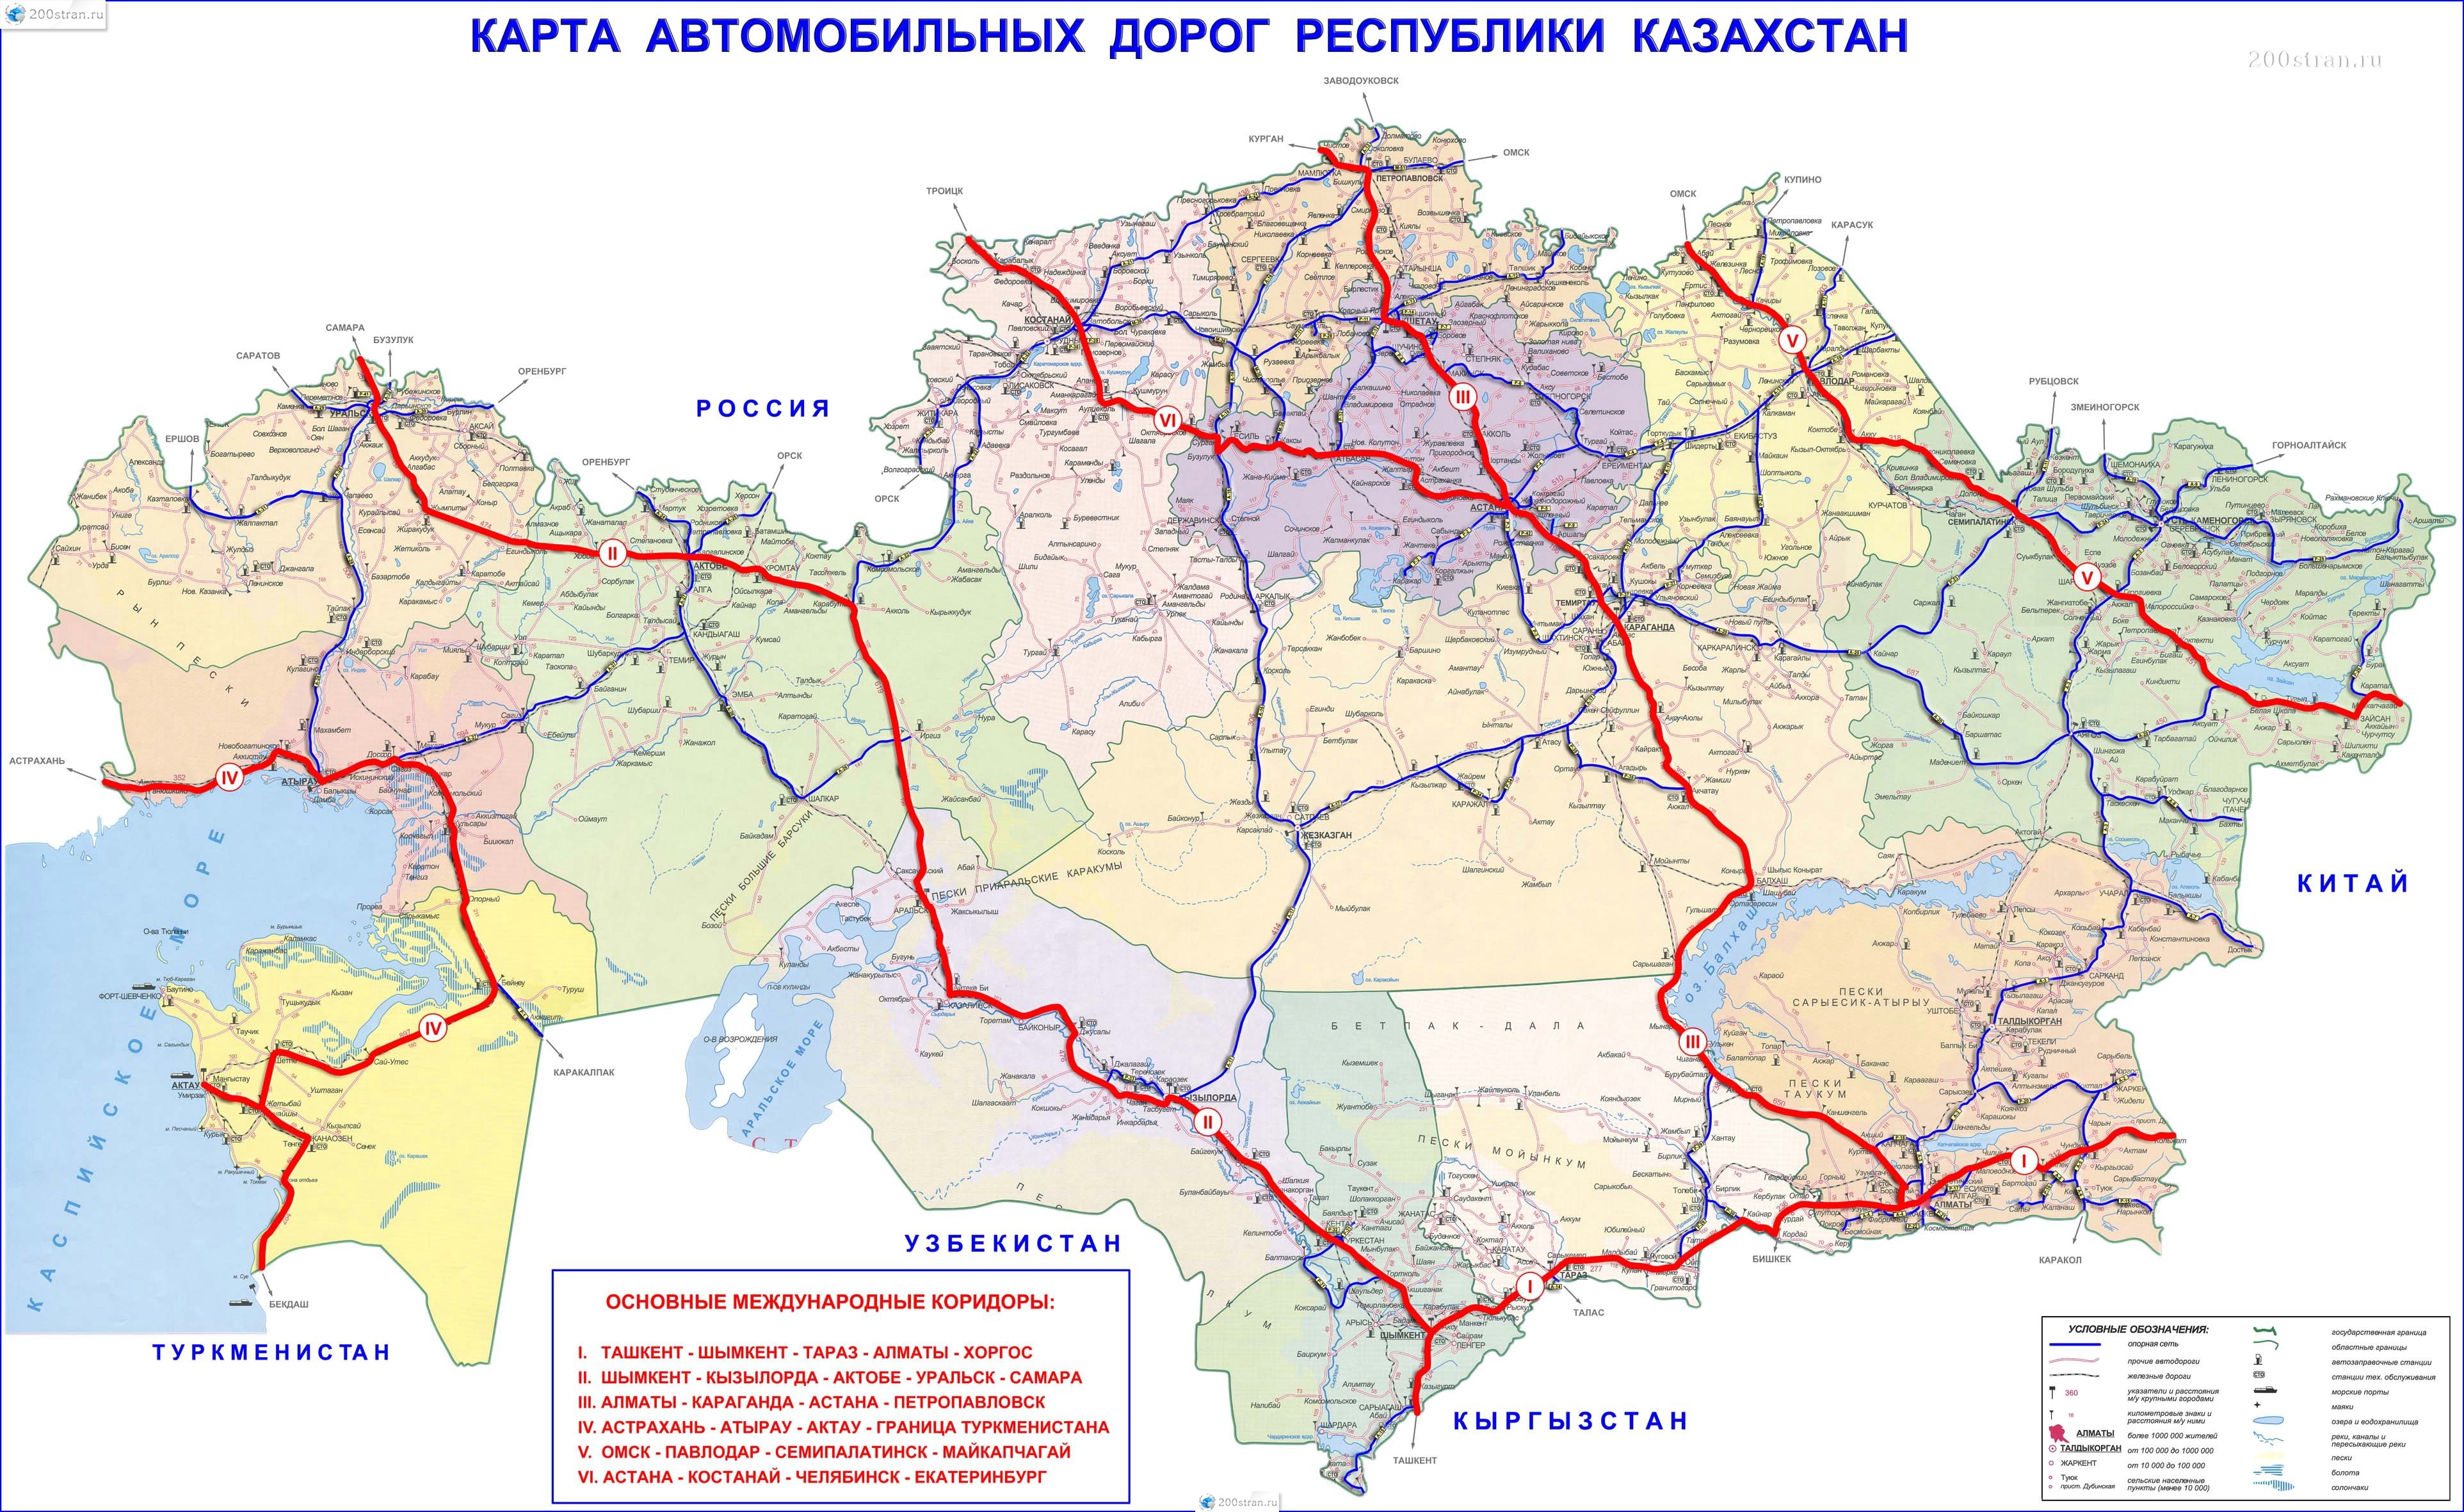 Автомобильные дороги Казахстана